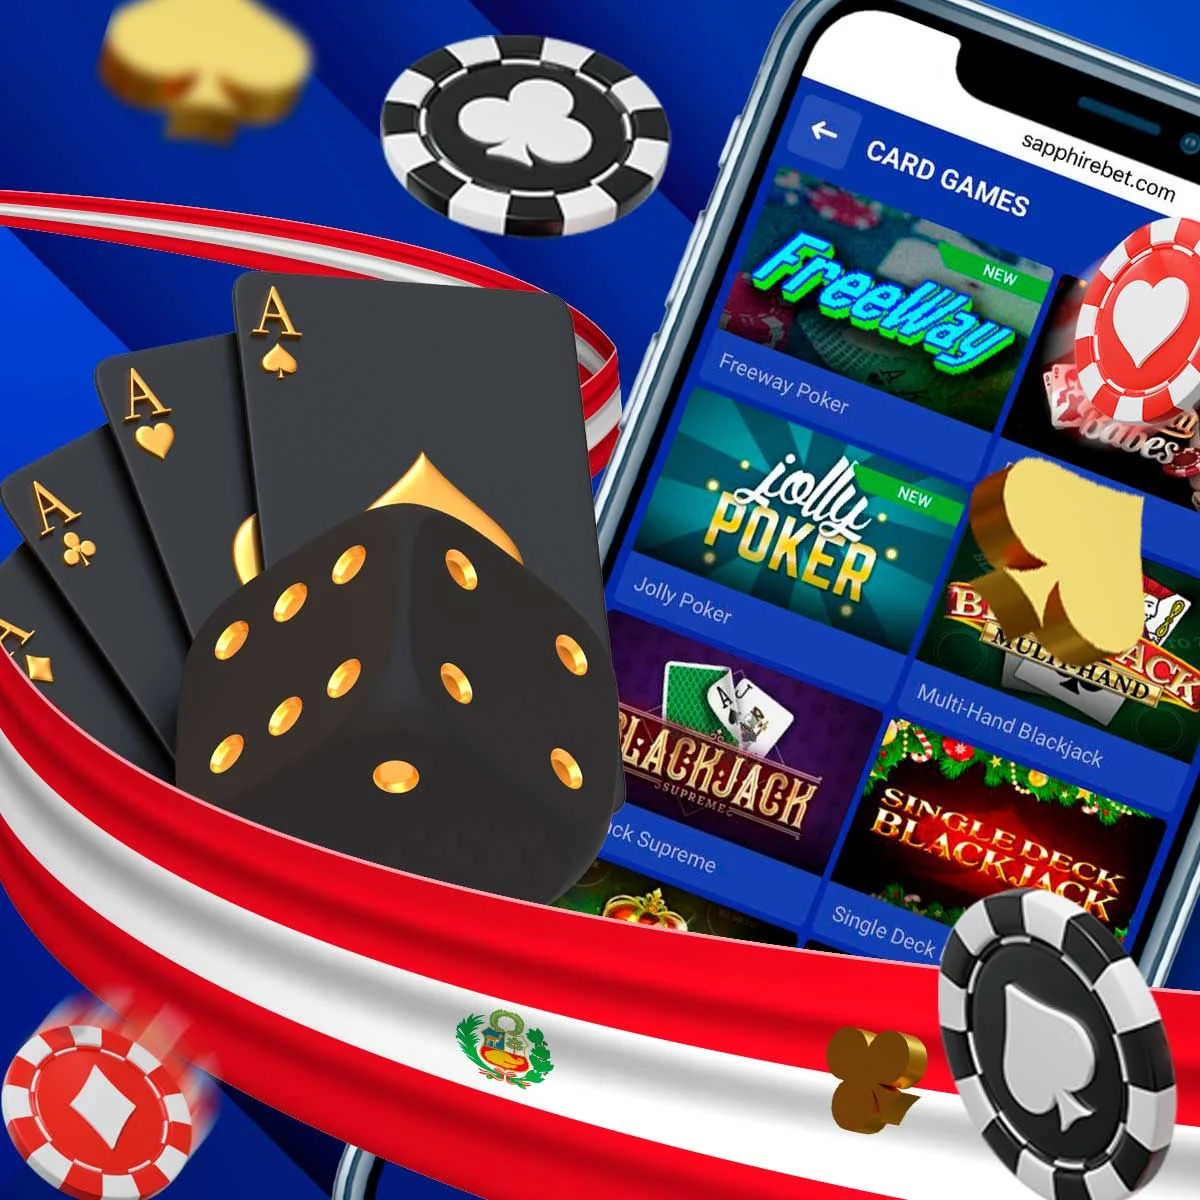 ¿Cuáles son los juegos de poker más populares en la plataforma Sapphirebet?